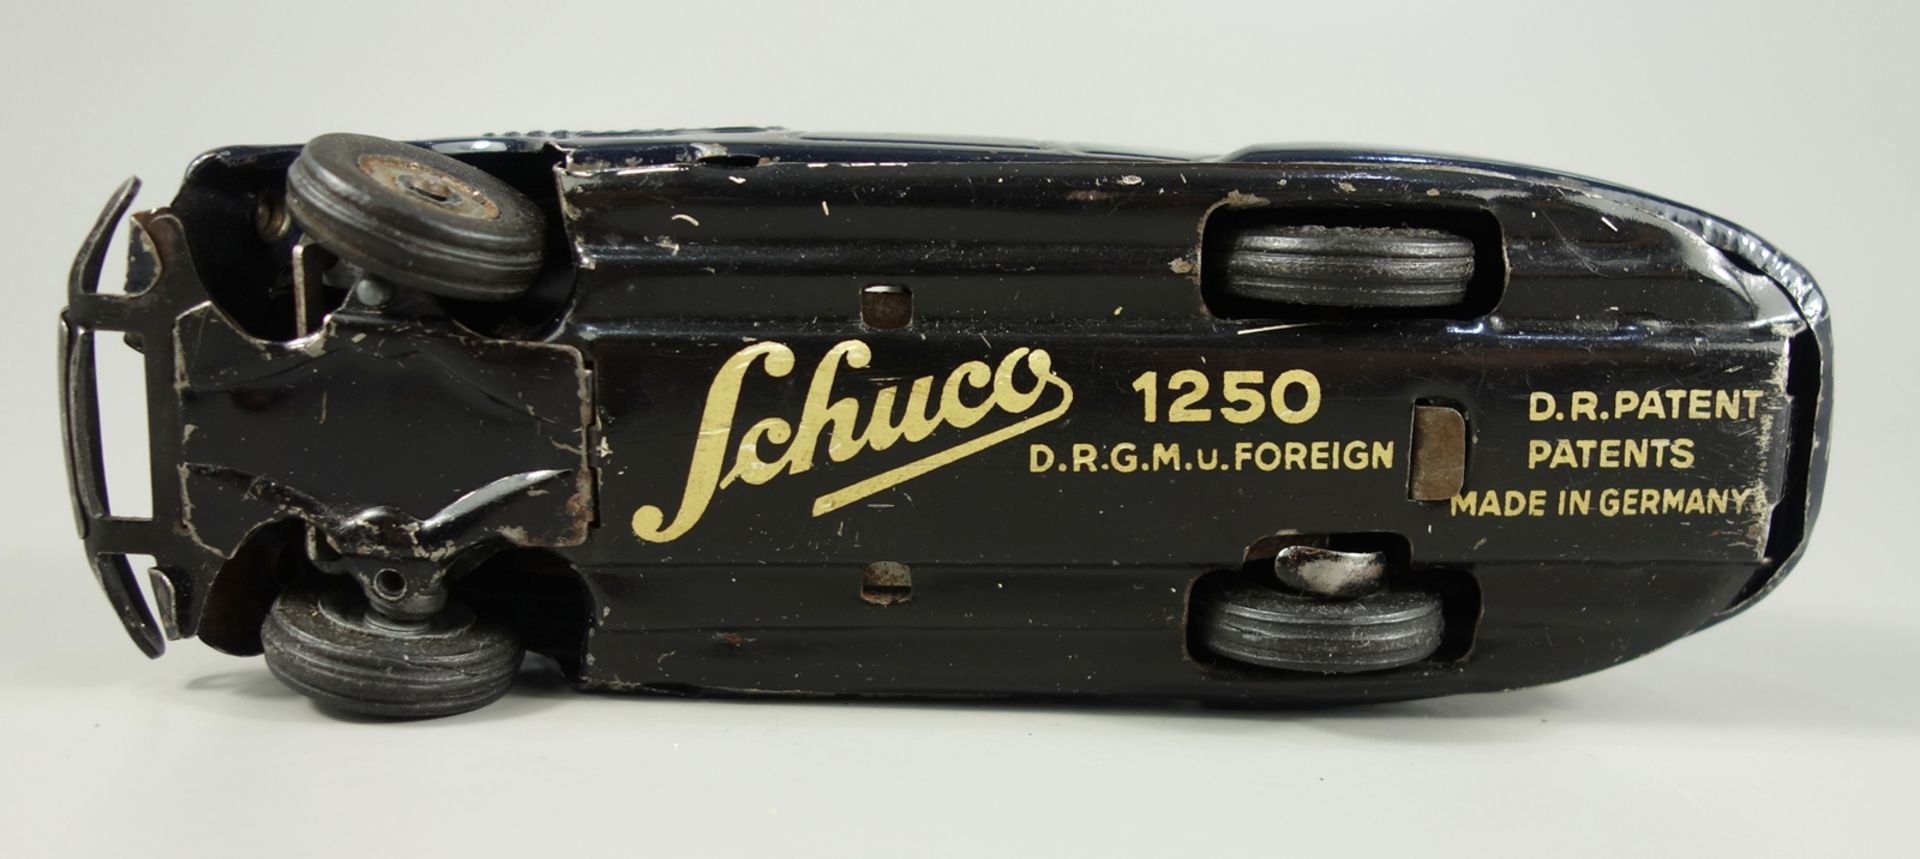 Schuco, schwarzer Freilaufrenner, Modell 1250, 1950er Jahre, Blechspeilzeug, Uhrwerkantrieb, L.14cm, - Bild 2 aus 2